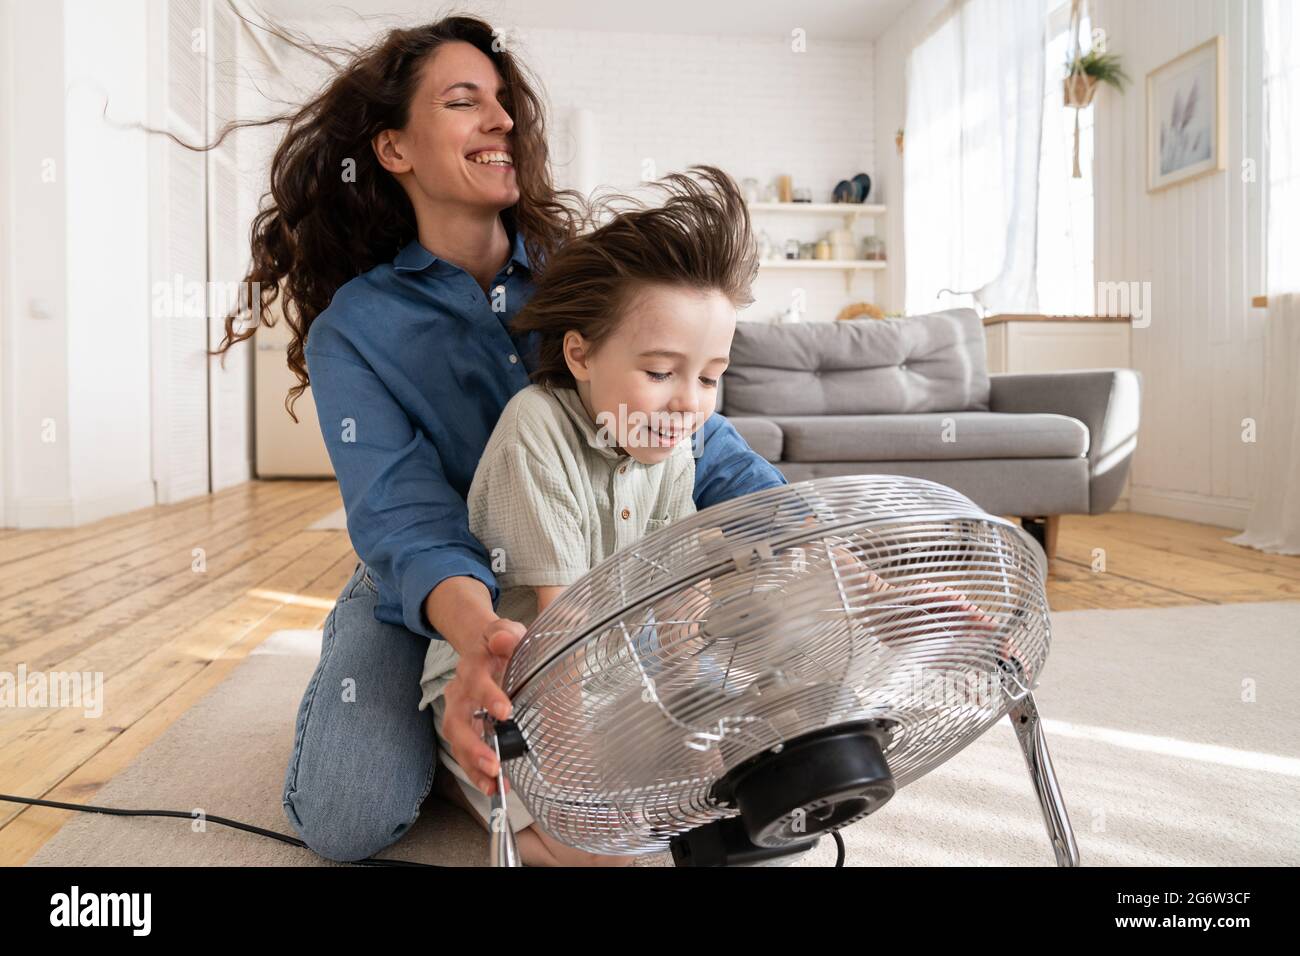 Famille ensemble: Jeune maman et fils d'âge préscolaire rire assis au ventilateur soufflant vent frais dans le visage Banque D'Images